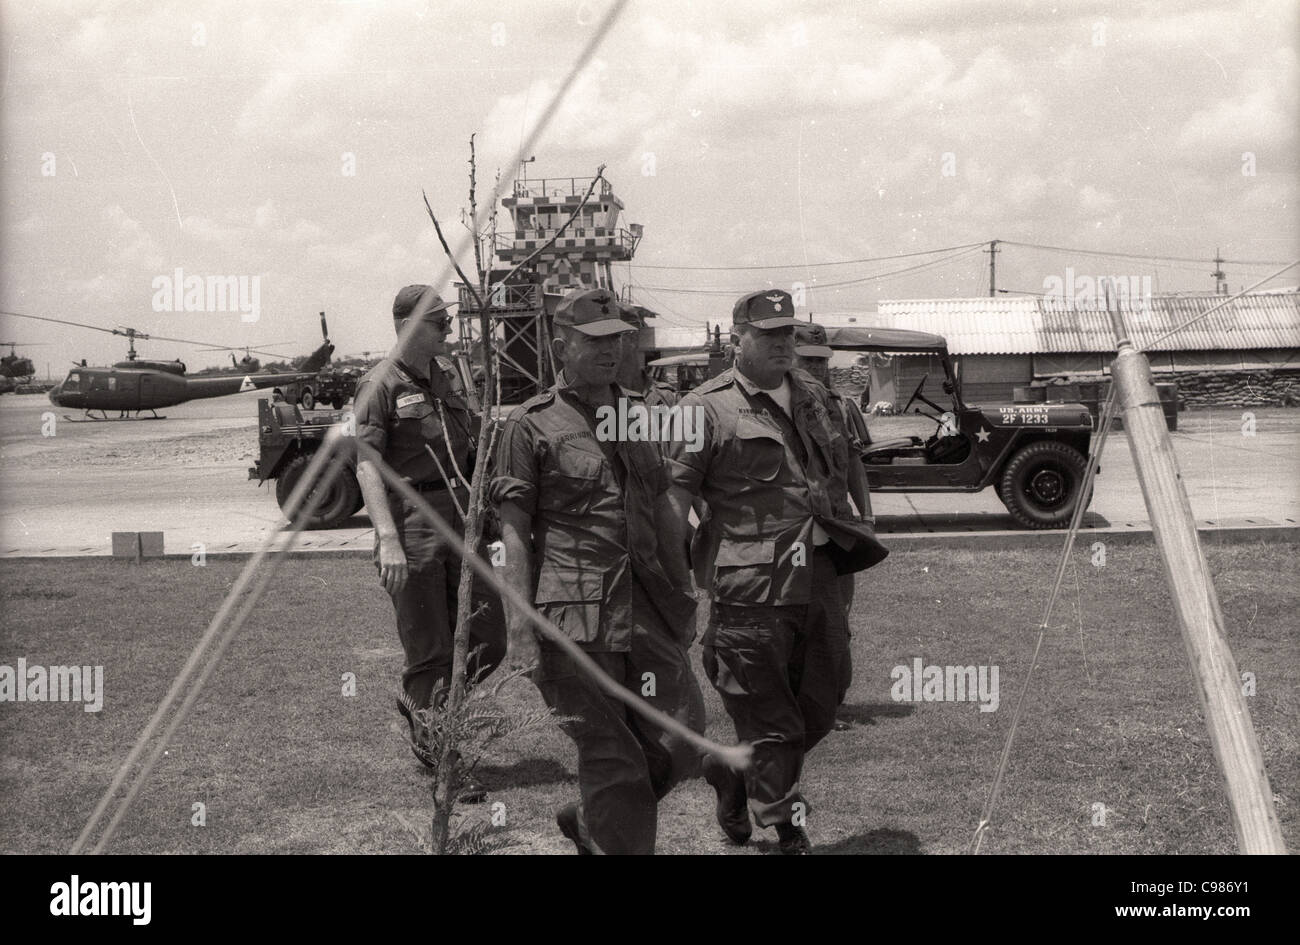 Unidad de helicópteros de guerra de Vietnam basecamp oficiales de 1ª Brigada Aérea de la torre de control huey Foto de stock